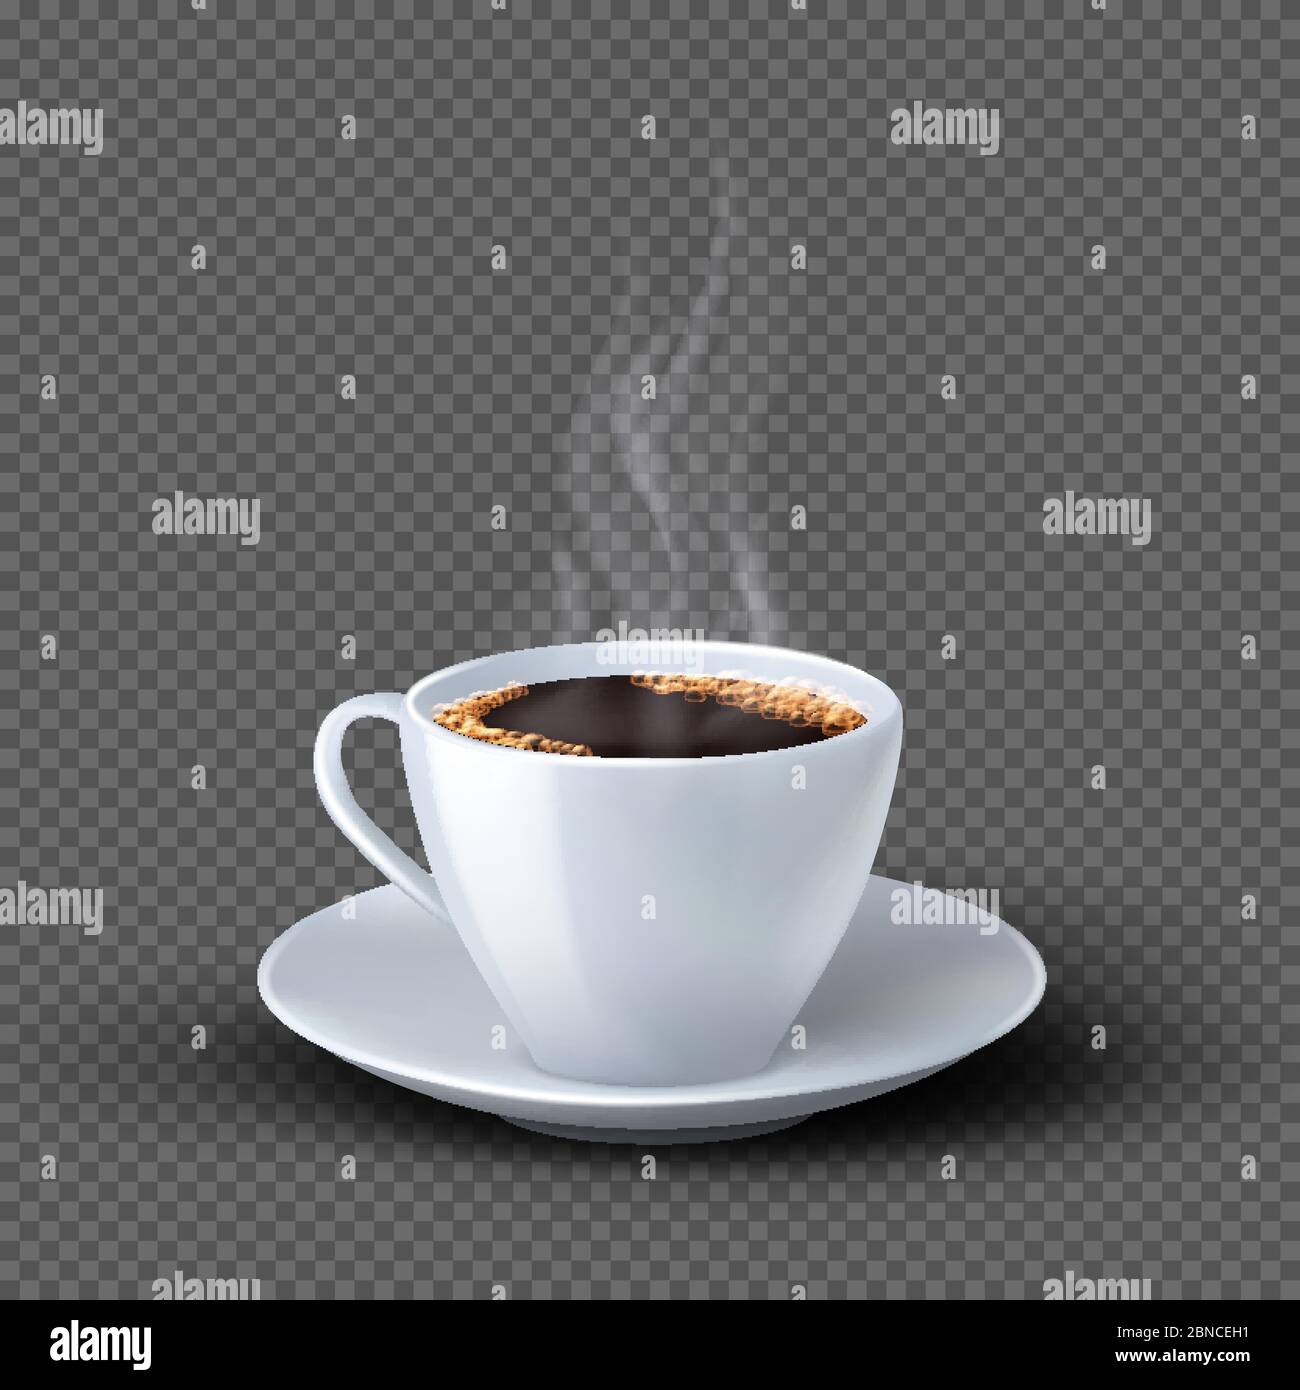 Tazza da caffè bianca e realistica con fumo isolato su sfondo trasparente. Caffè bevande, caffè illustrazione della colazione Illustrazione Vettoriale